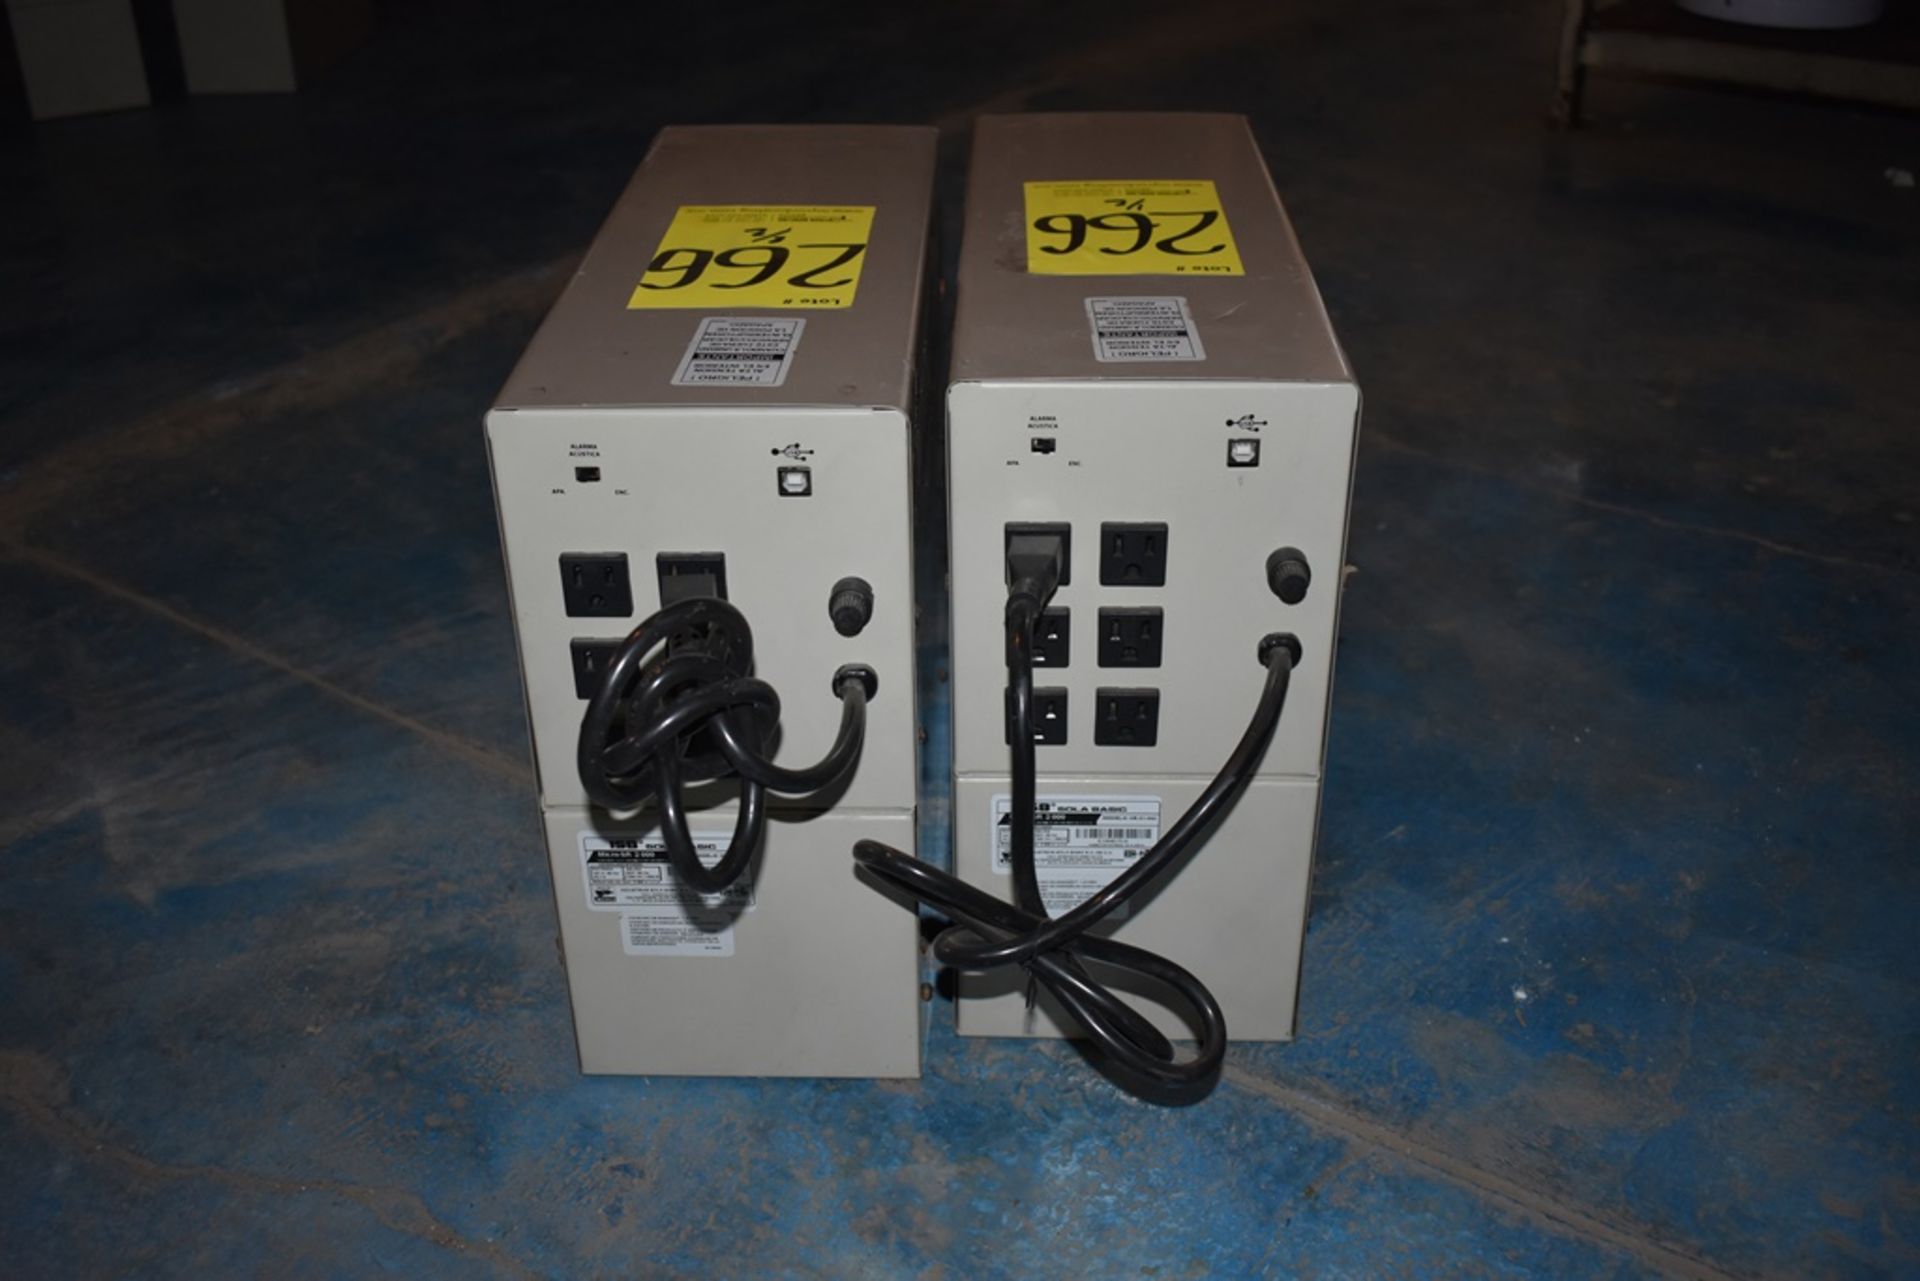 Dos reguladores de voltaje marca ISB Solabasic, modelo: XR-21-202, Series: E18F02675, E18H01516 - Image 5 of 17